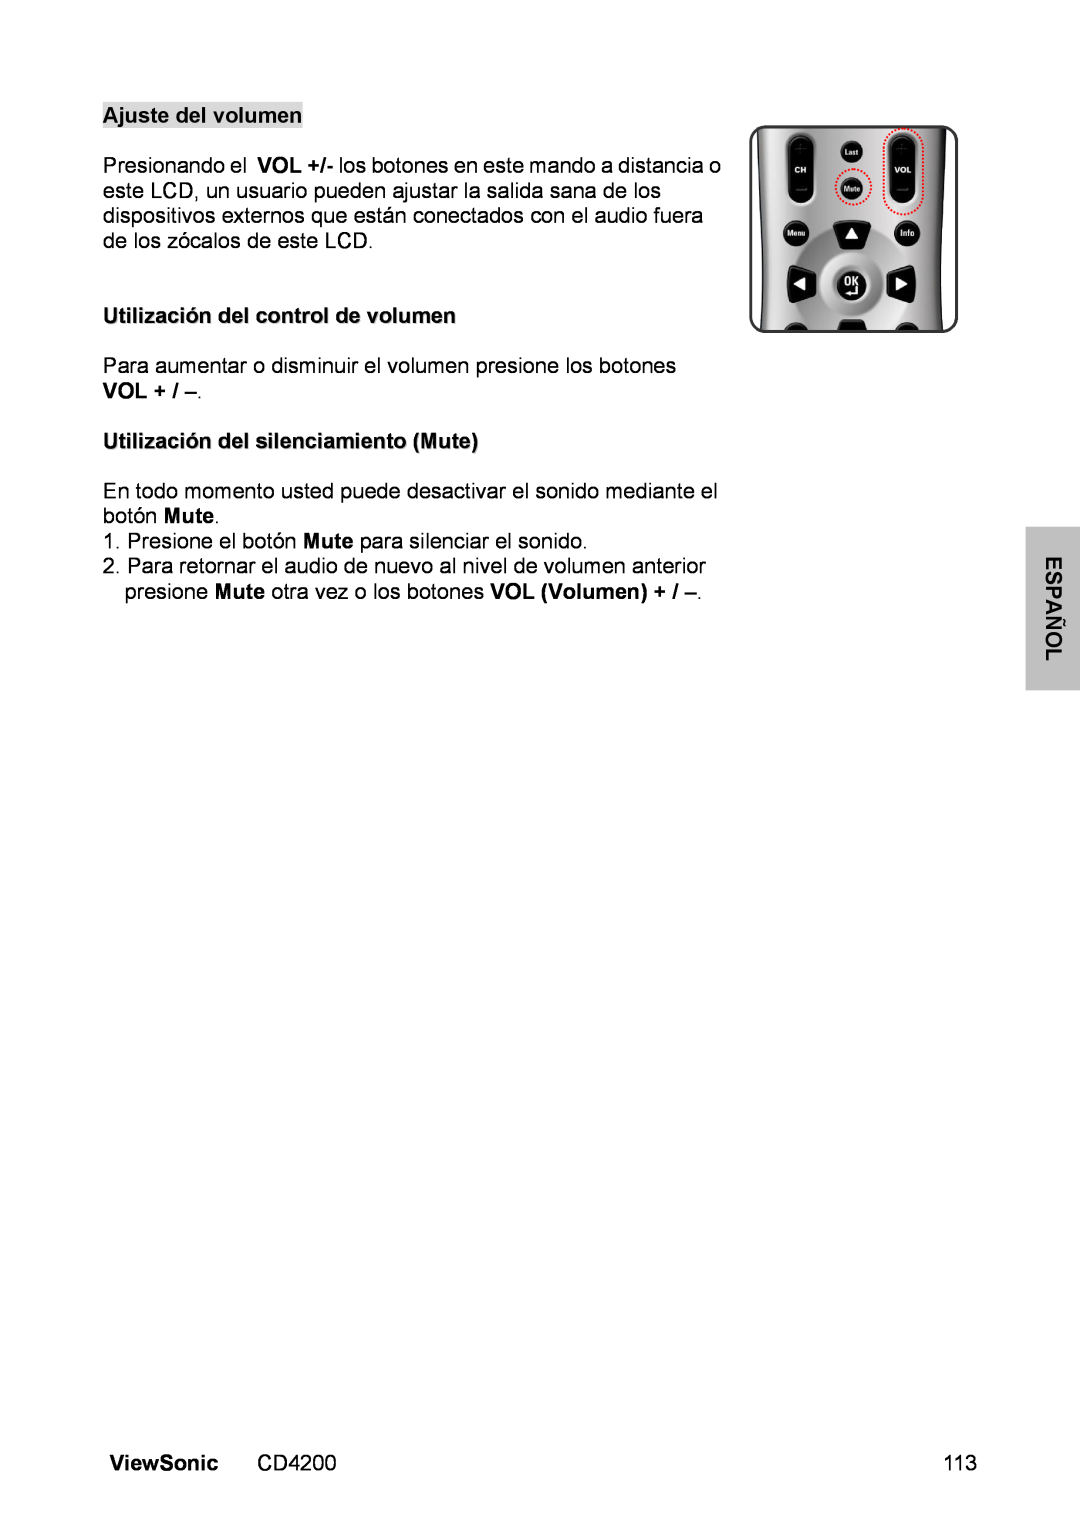 ViewSonic CD4200 Ajuste del volumen, Utilización del control de volumen, Utilización del silenciamiento Mute, Español 